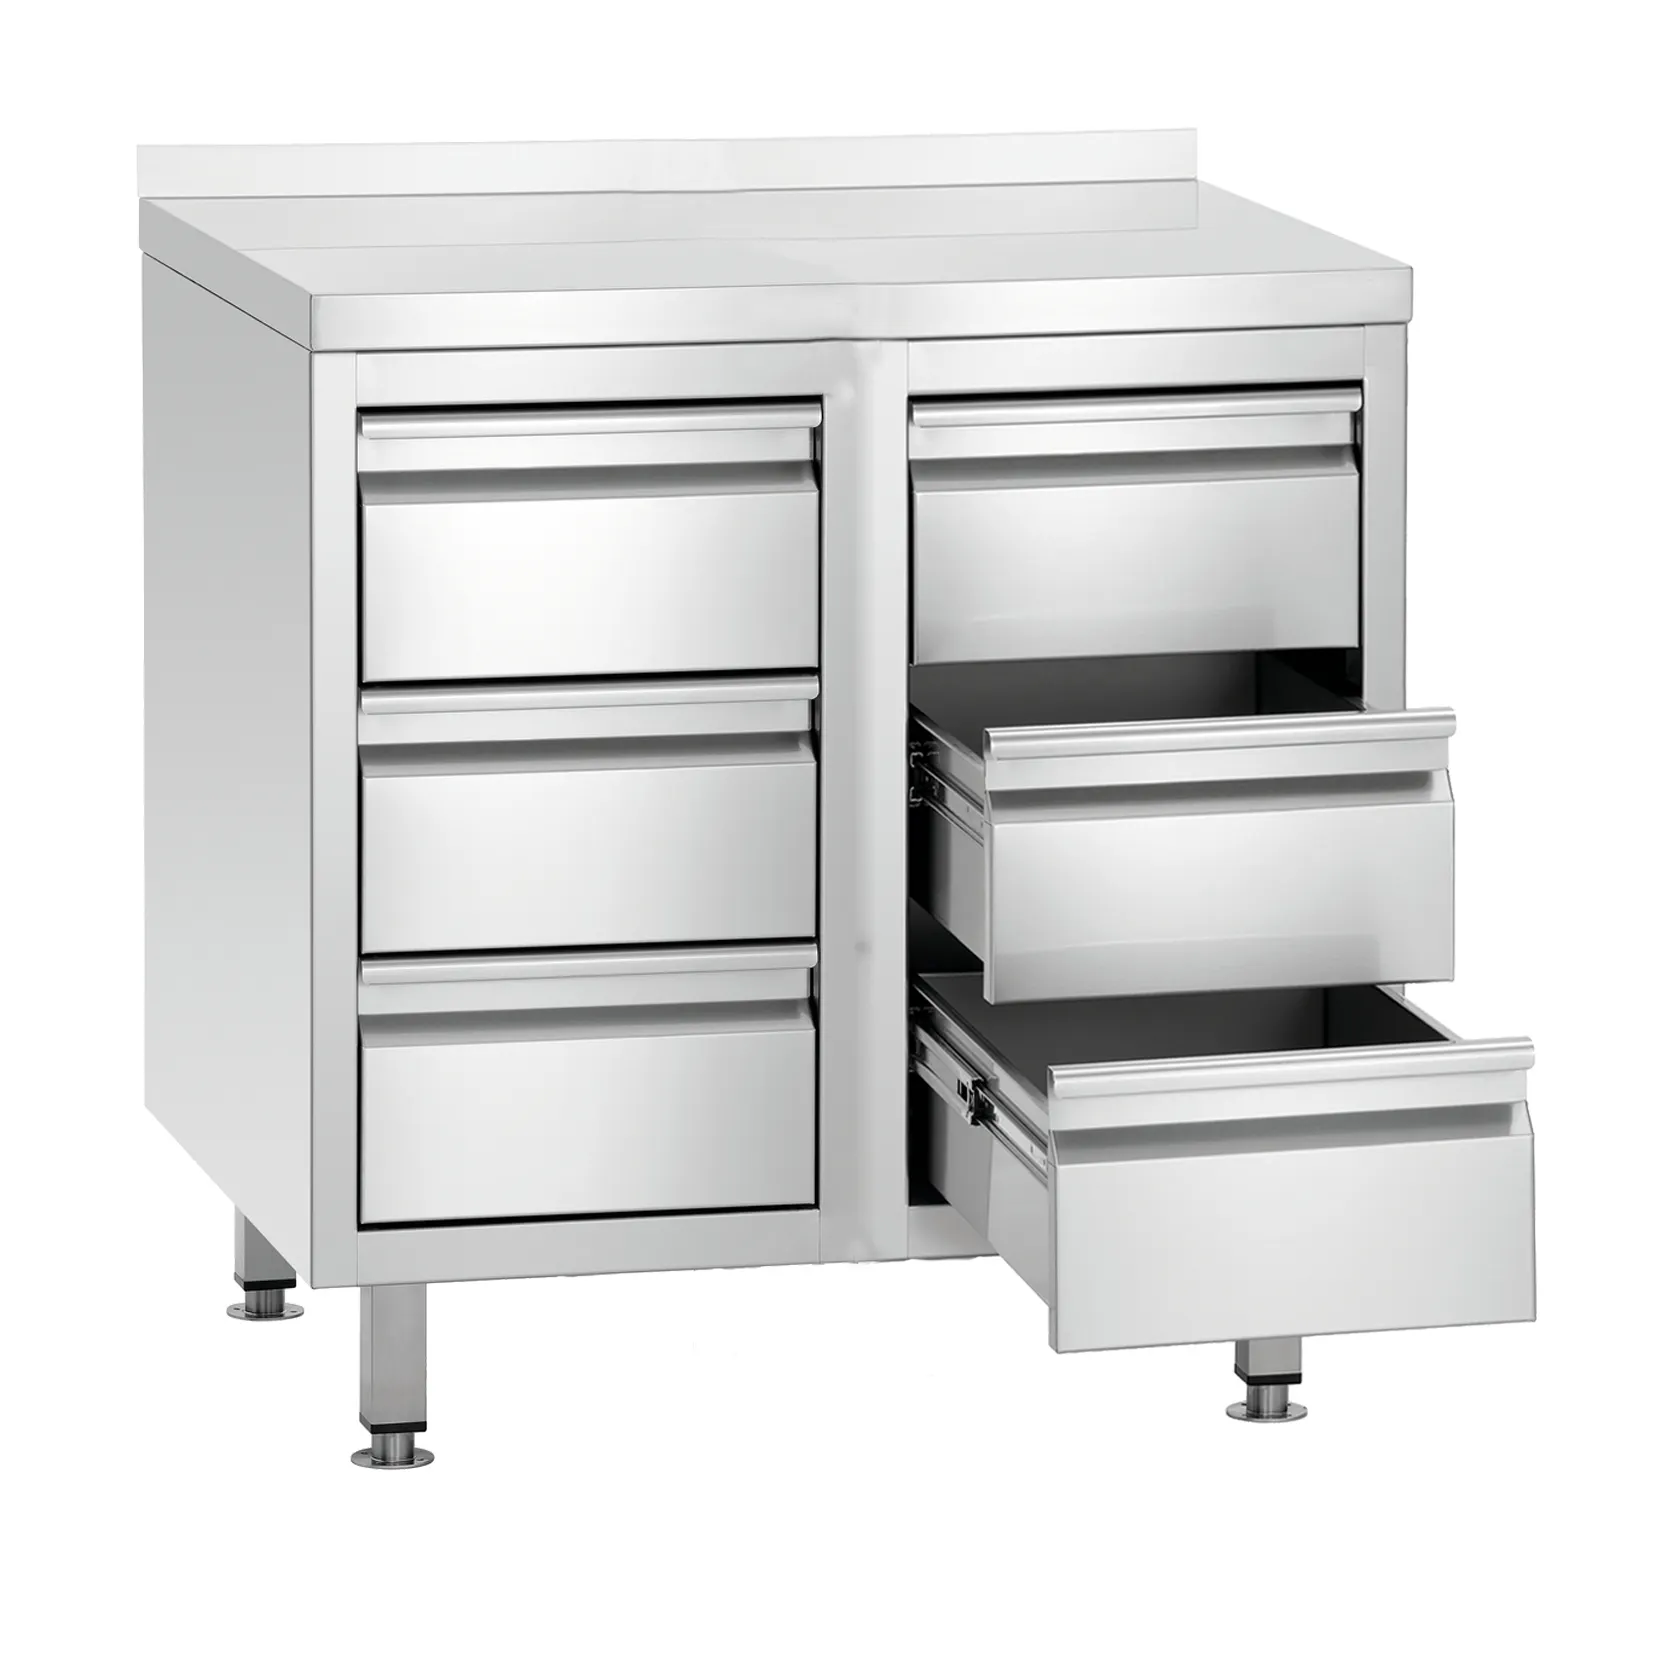 Yeni tasarım paslanmaz çelik mutfak dolap çekmeceler restoran için